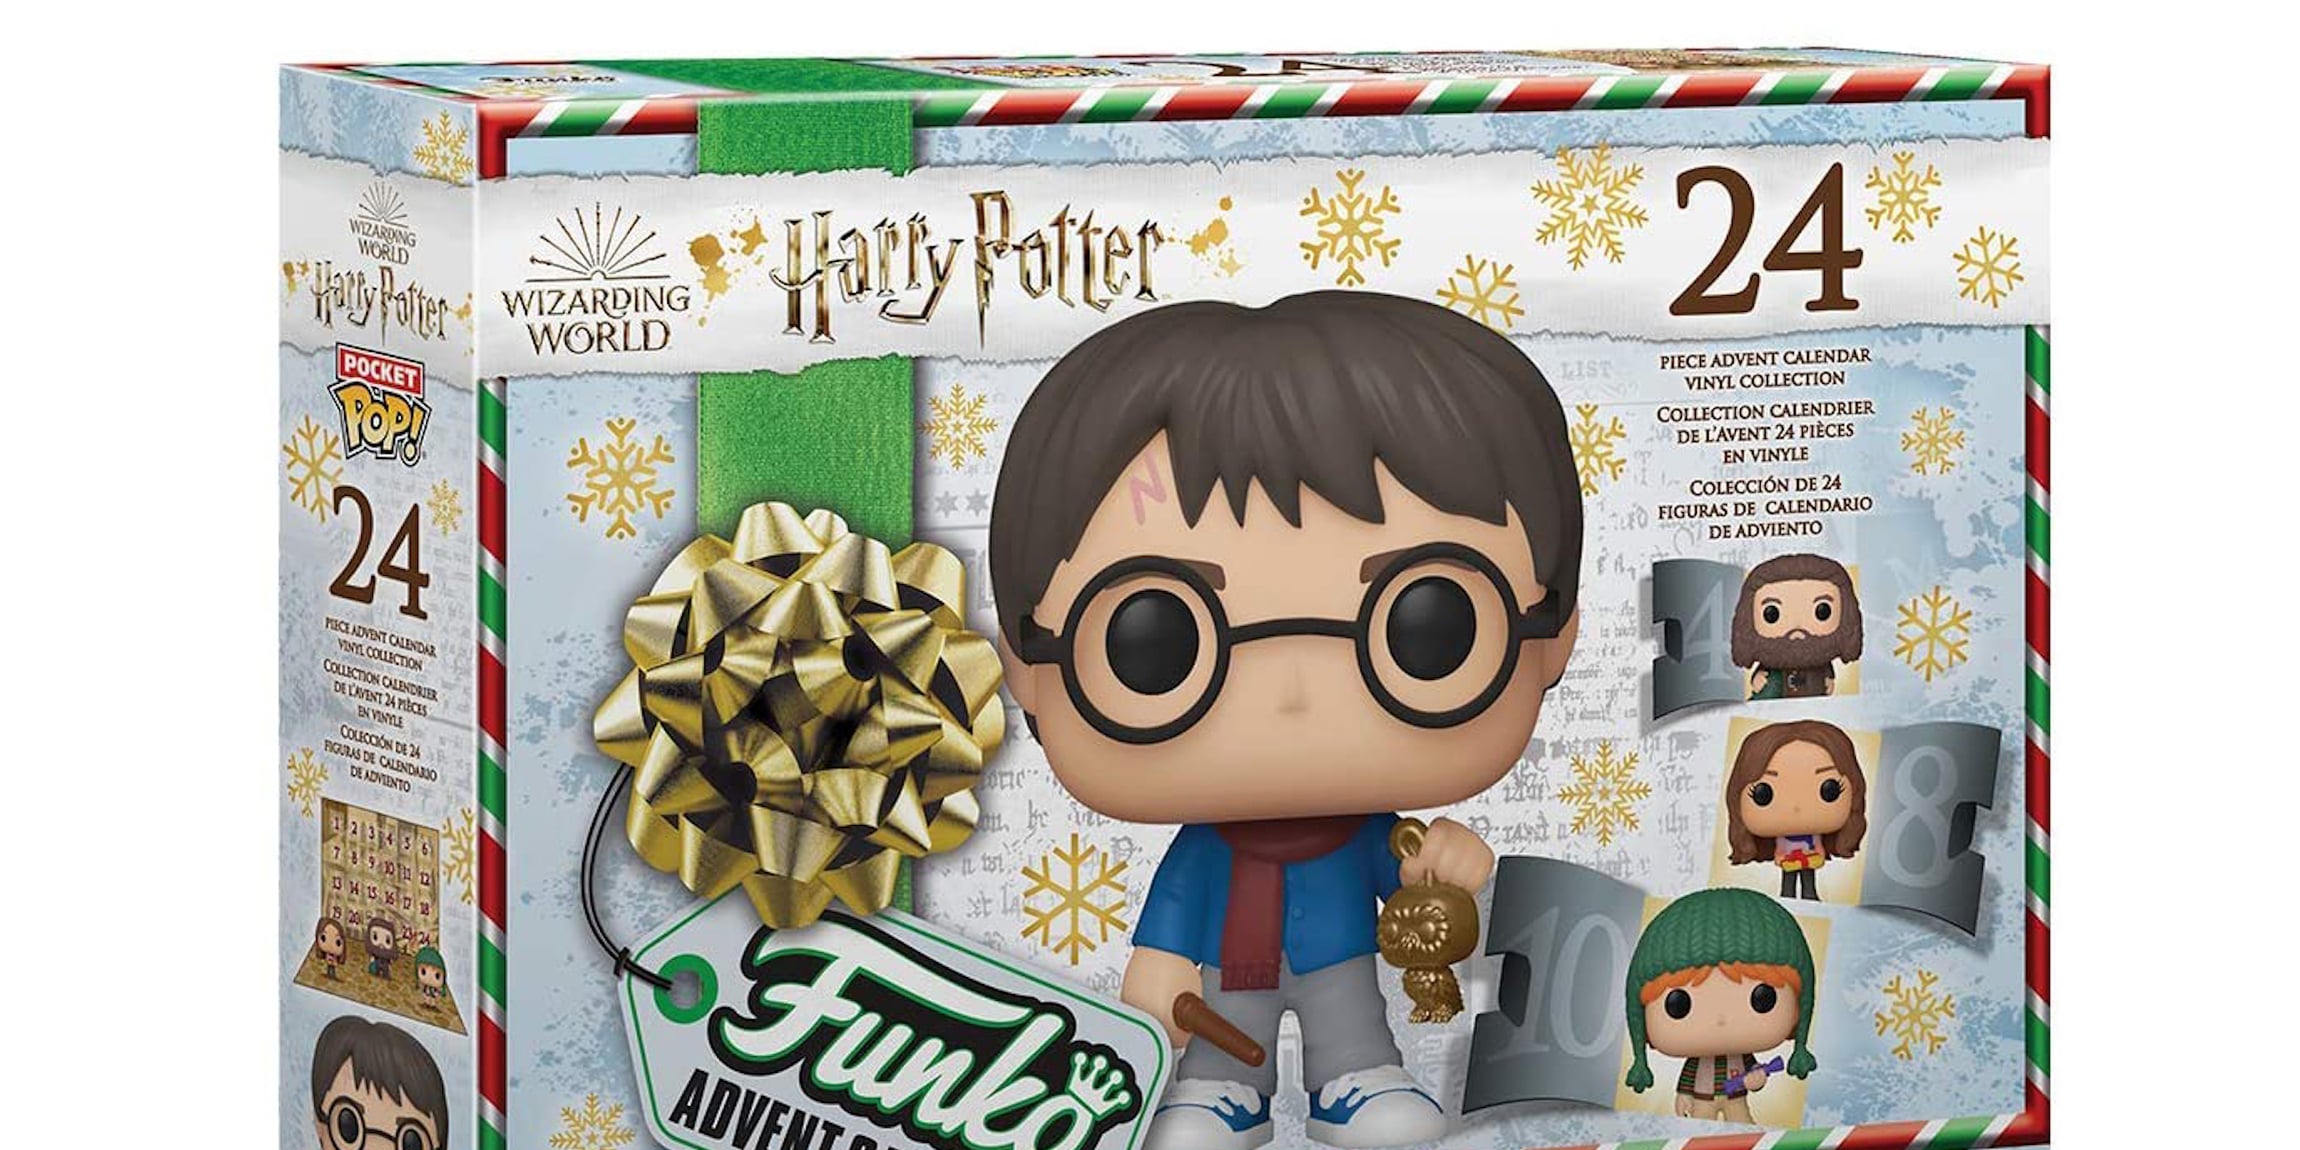 Funko Pop Harry Potter Advent Calendar Mini Pop Figures Lot of 9 2019